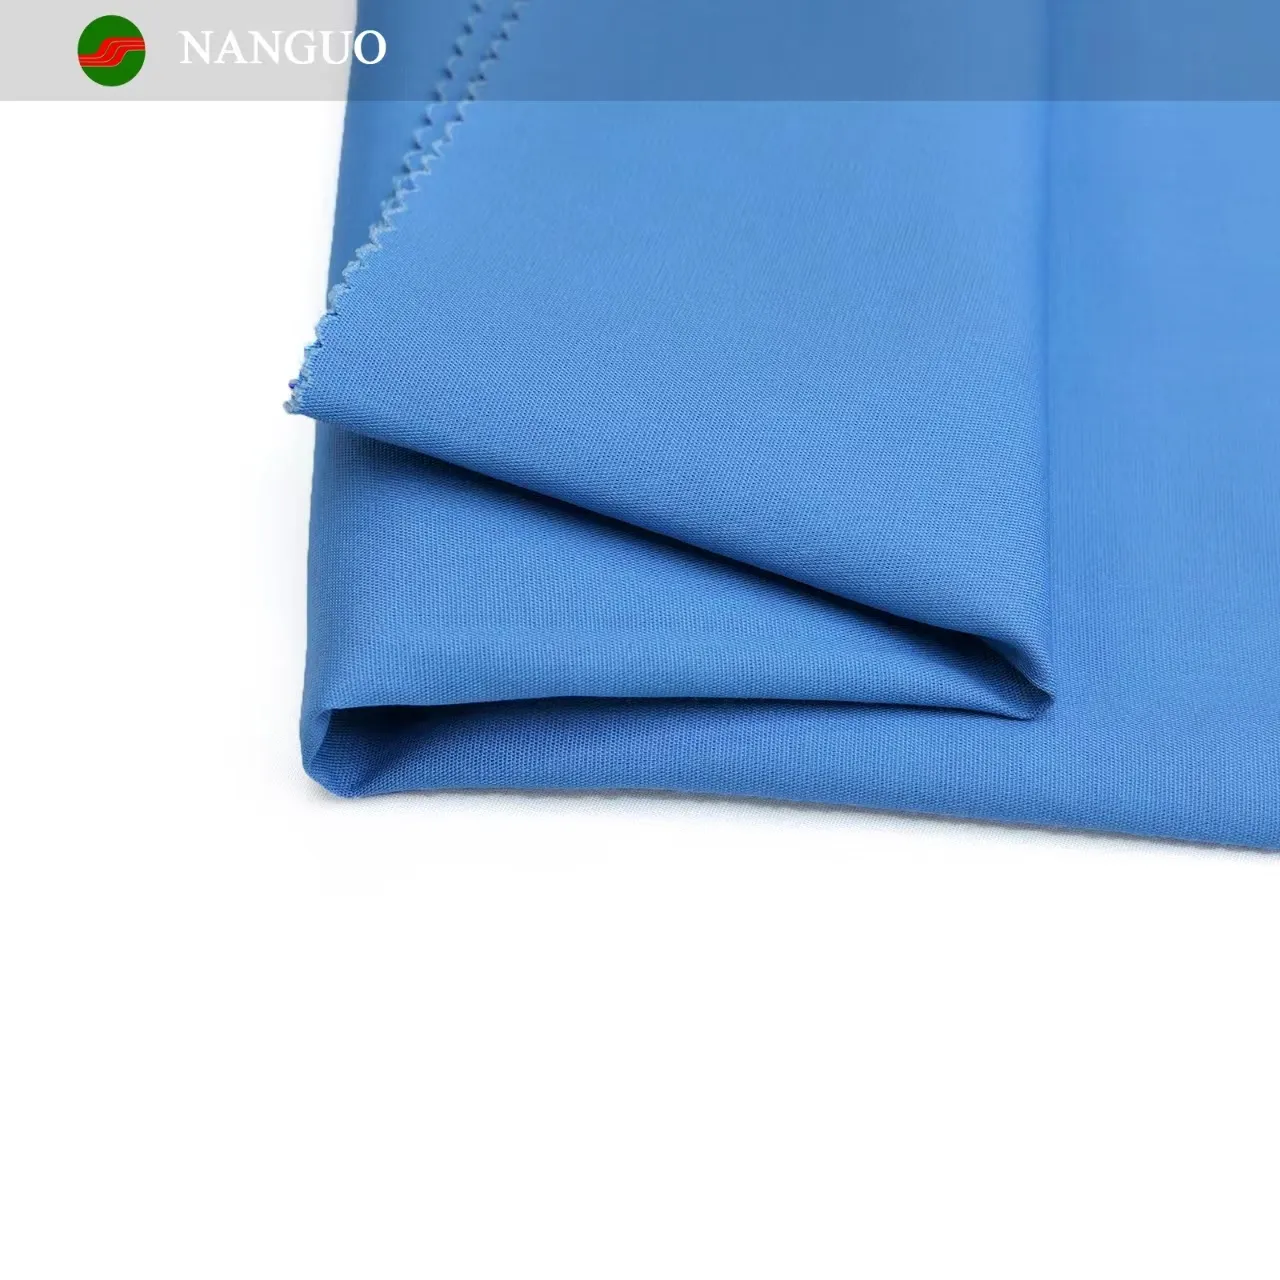 Nanguo nhà máy tùy chỉnh bảo hộ lao động 80% polyester 20% Cotton 21x21 100x50 175gsm TC vải poplin dệt vải cho quần áo